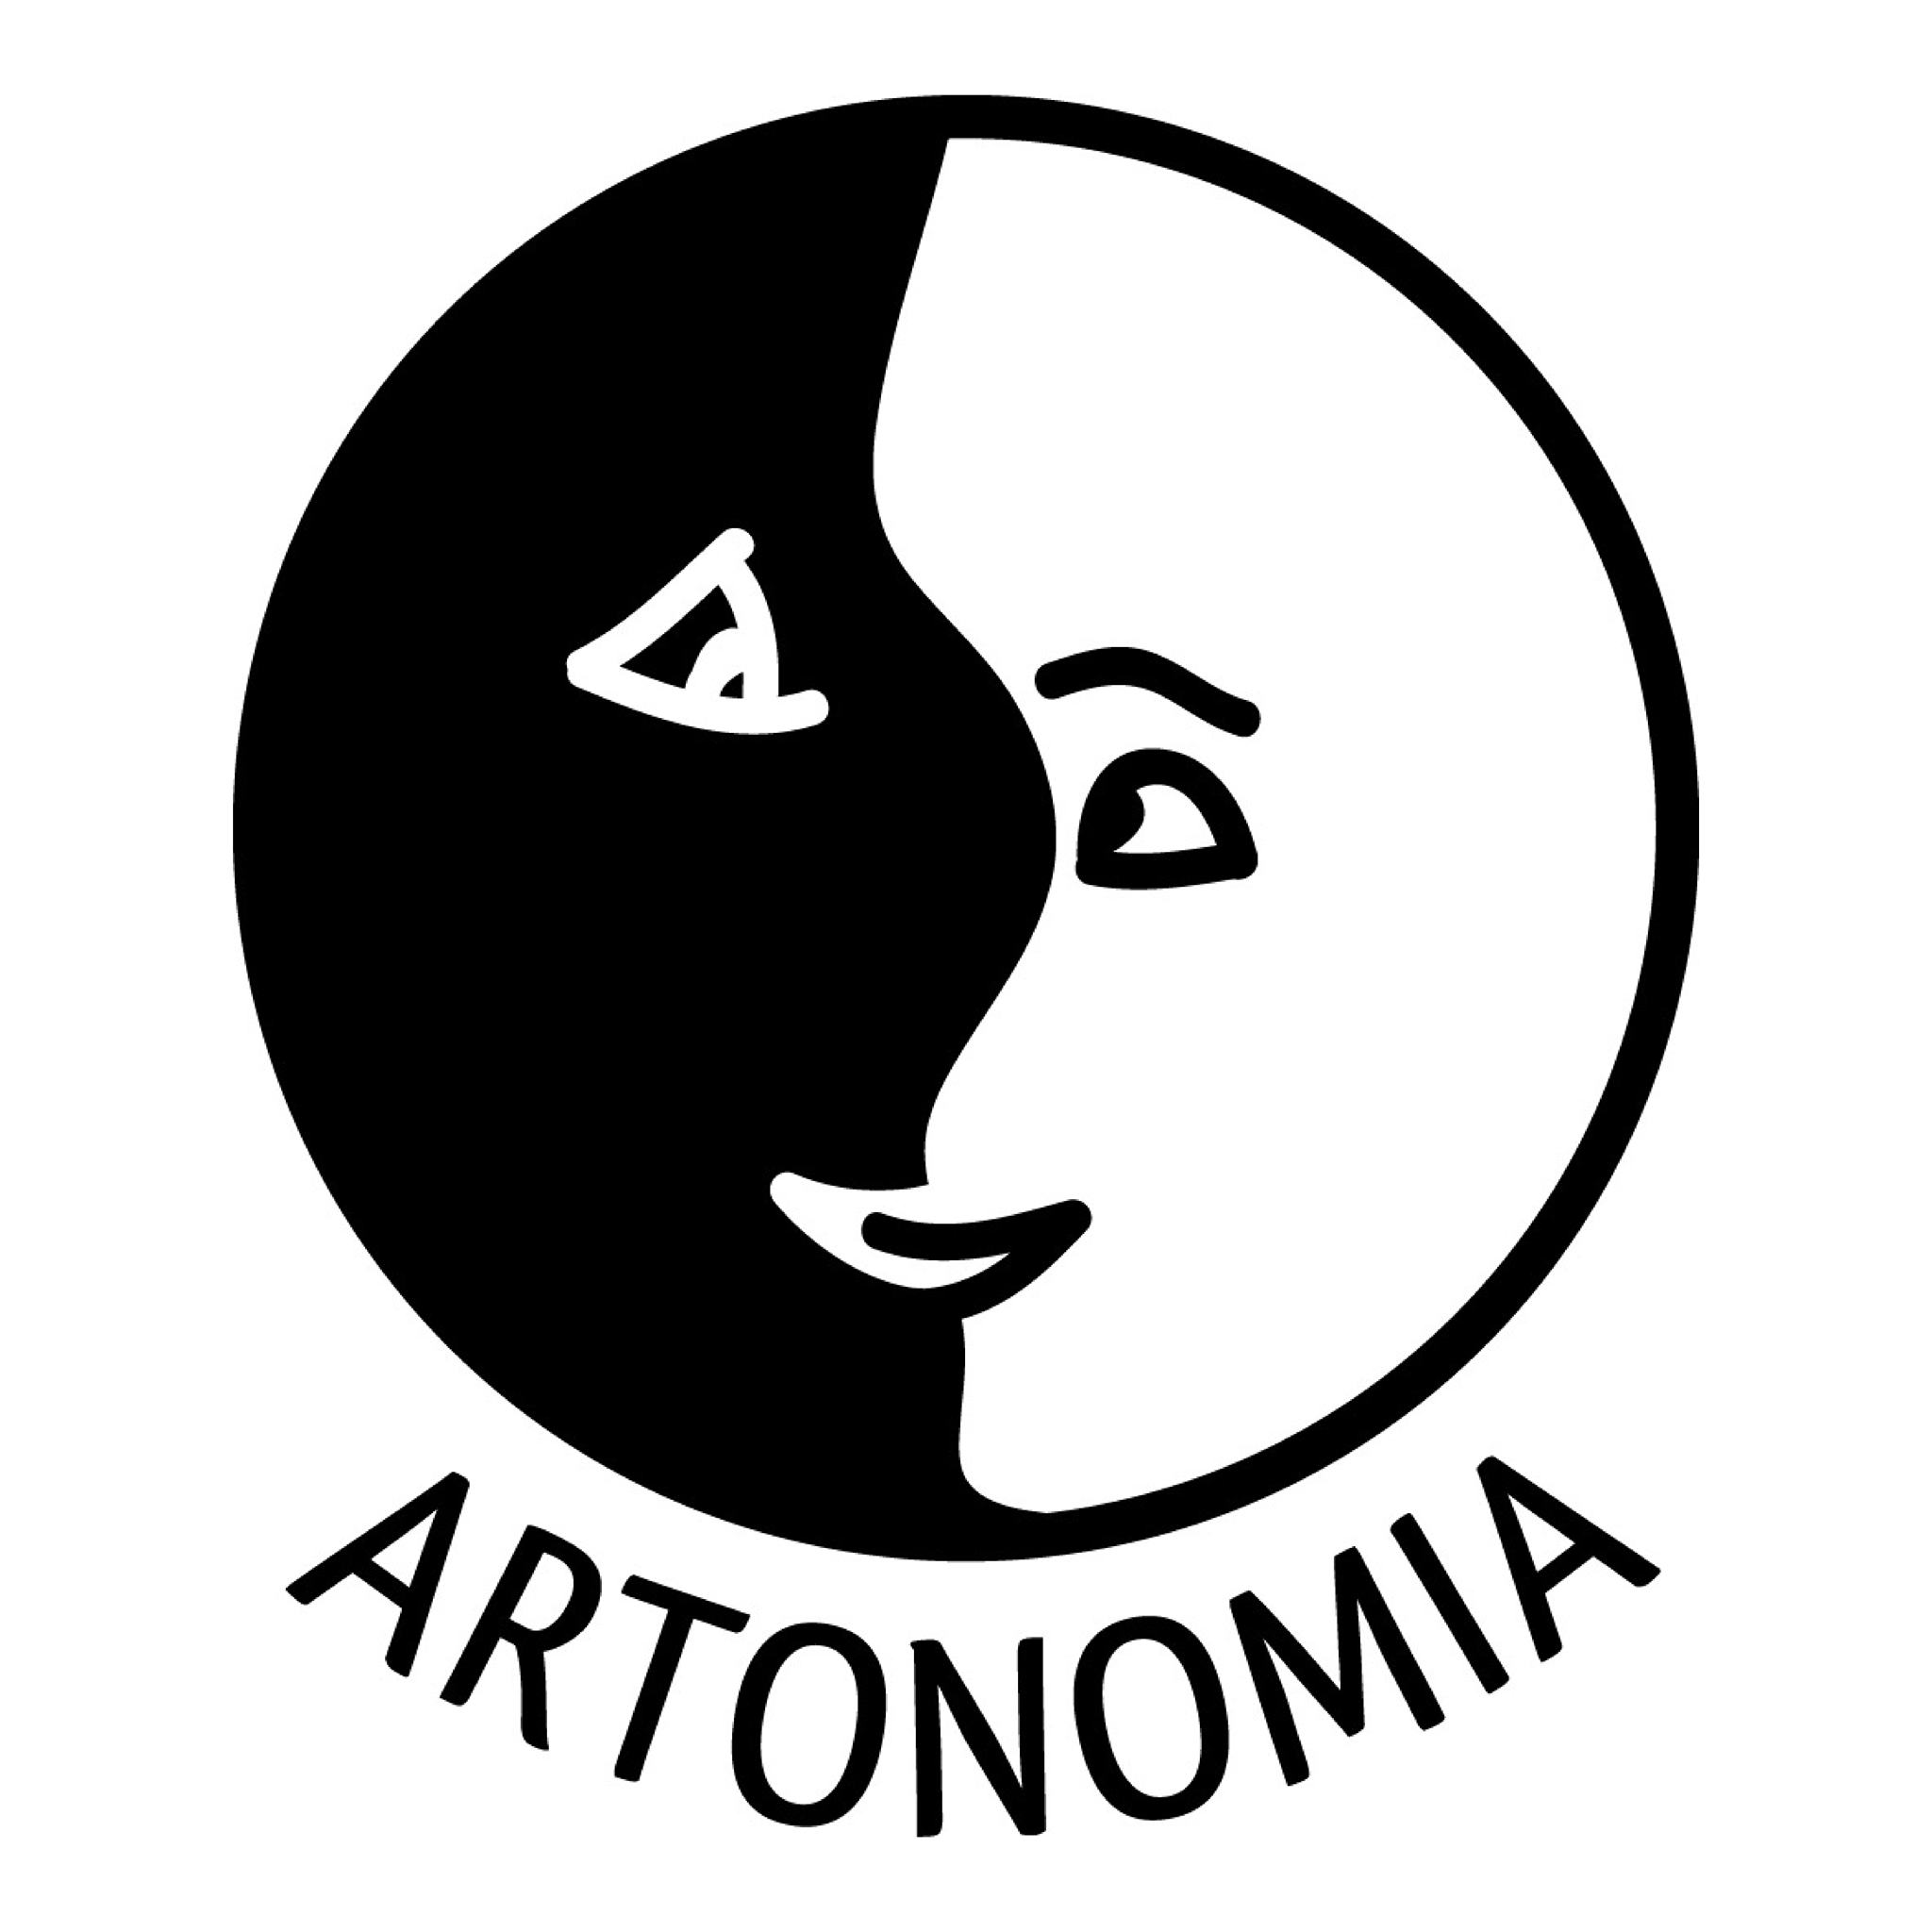 Fundacja Artonomia